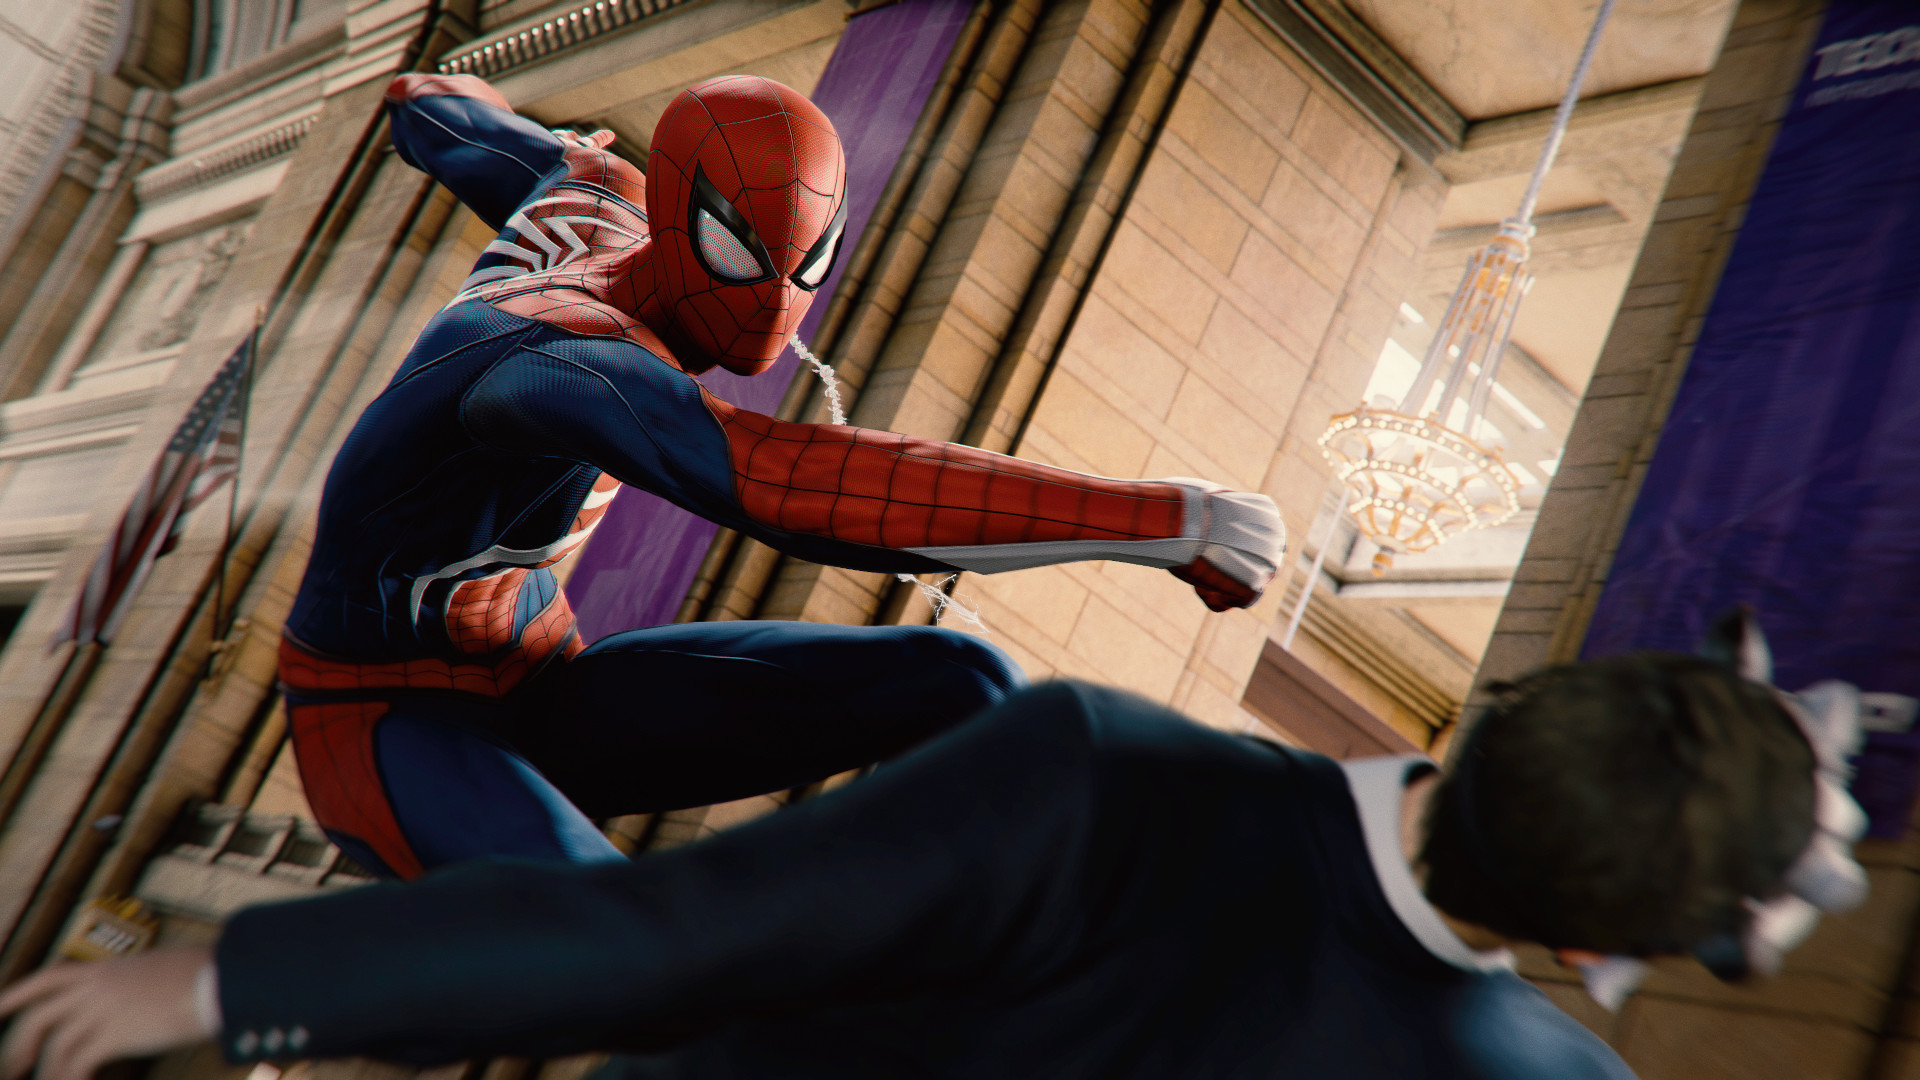 Recenze Marvel's Spider-Man Remastered PC: Moron dostane svůj vlastní úder od Webslingera